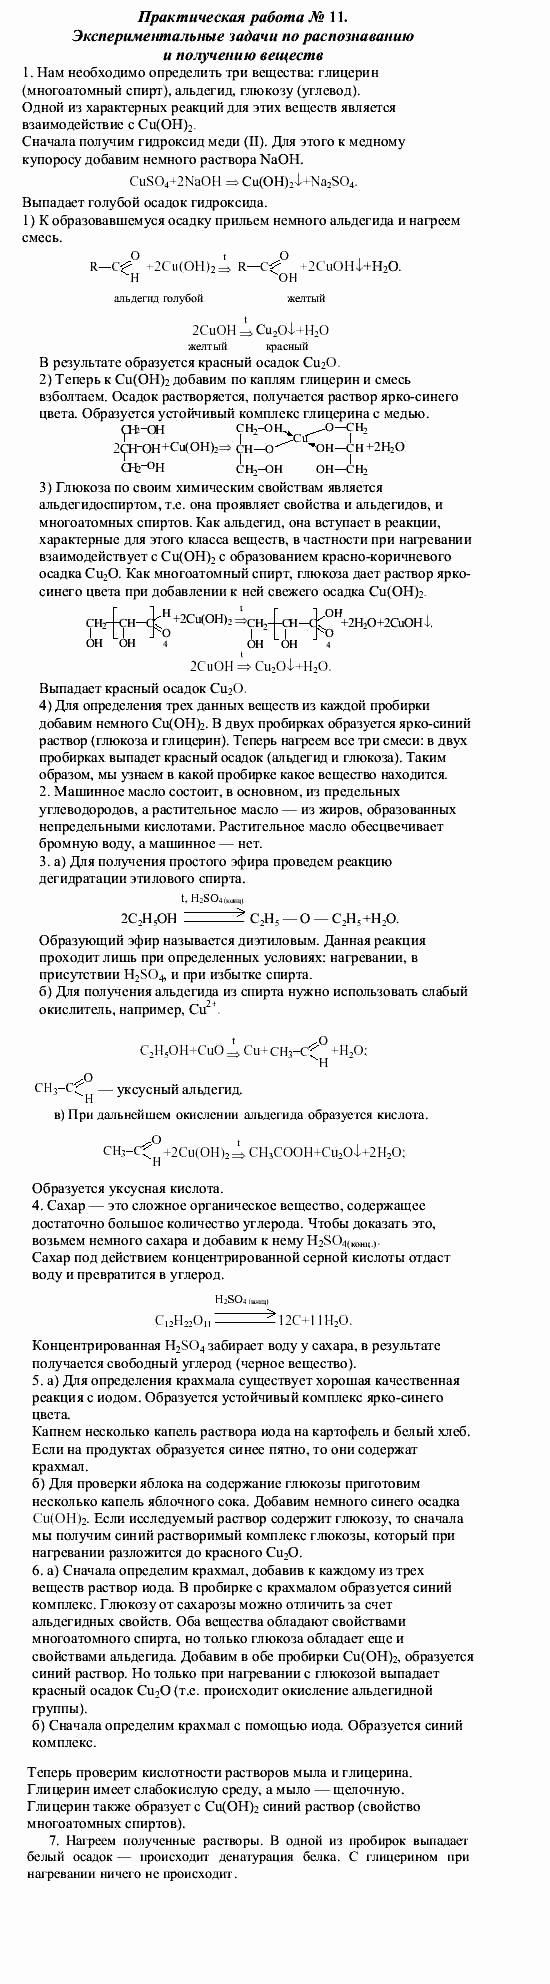 Химия, 9 класс, О.С. Габриелян, 2011 / 2004, Практическая работа № 11 Задание: 1